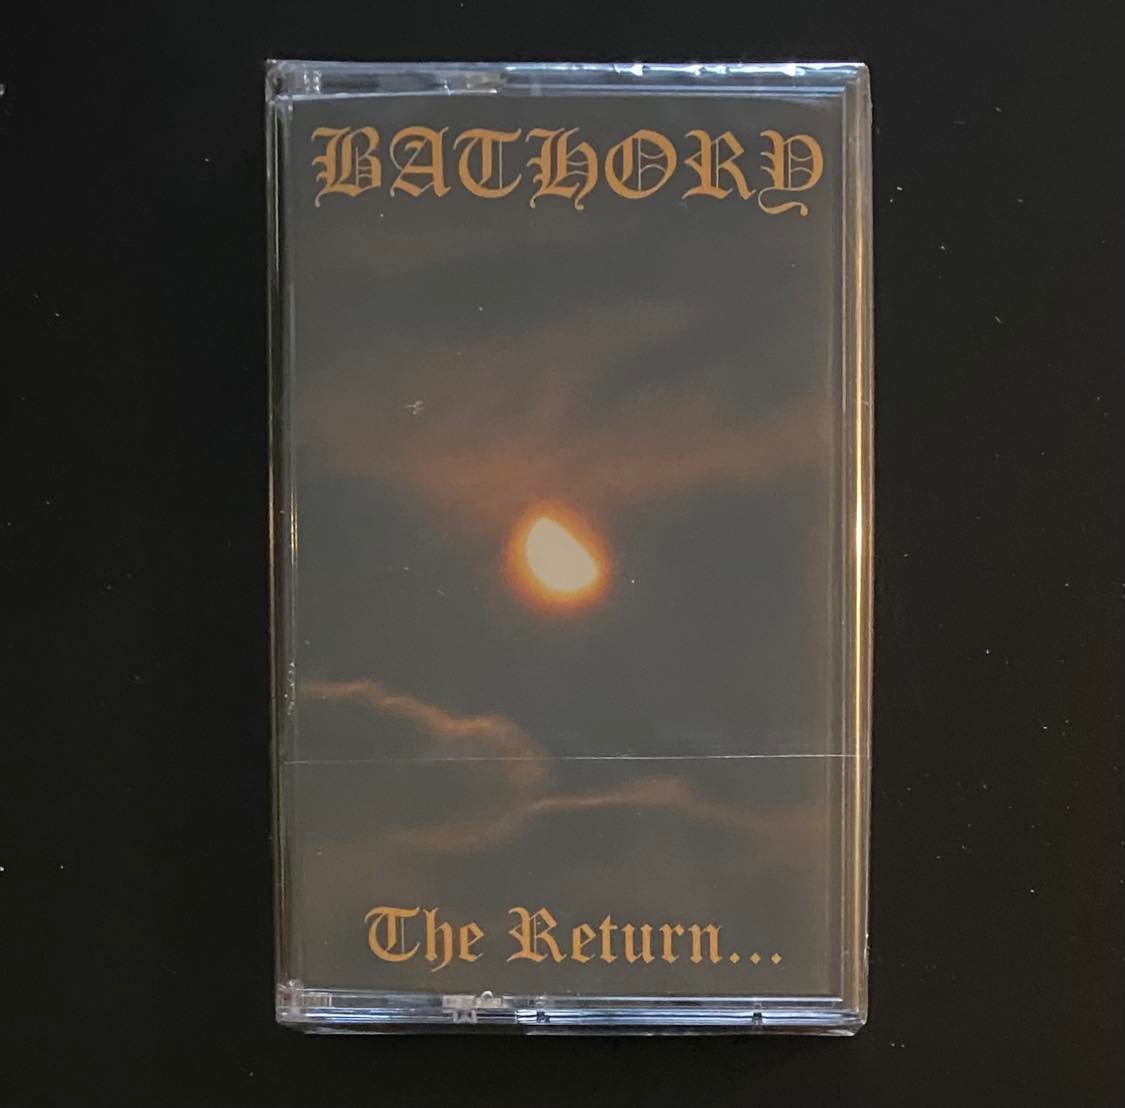 BATHORY – The Return... Cassette